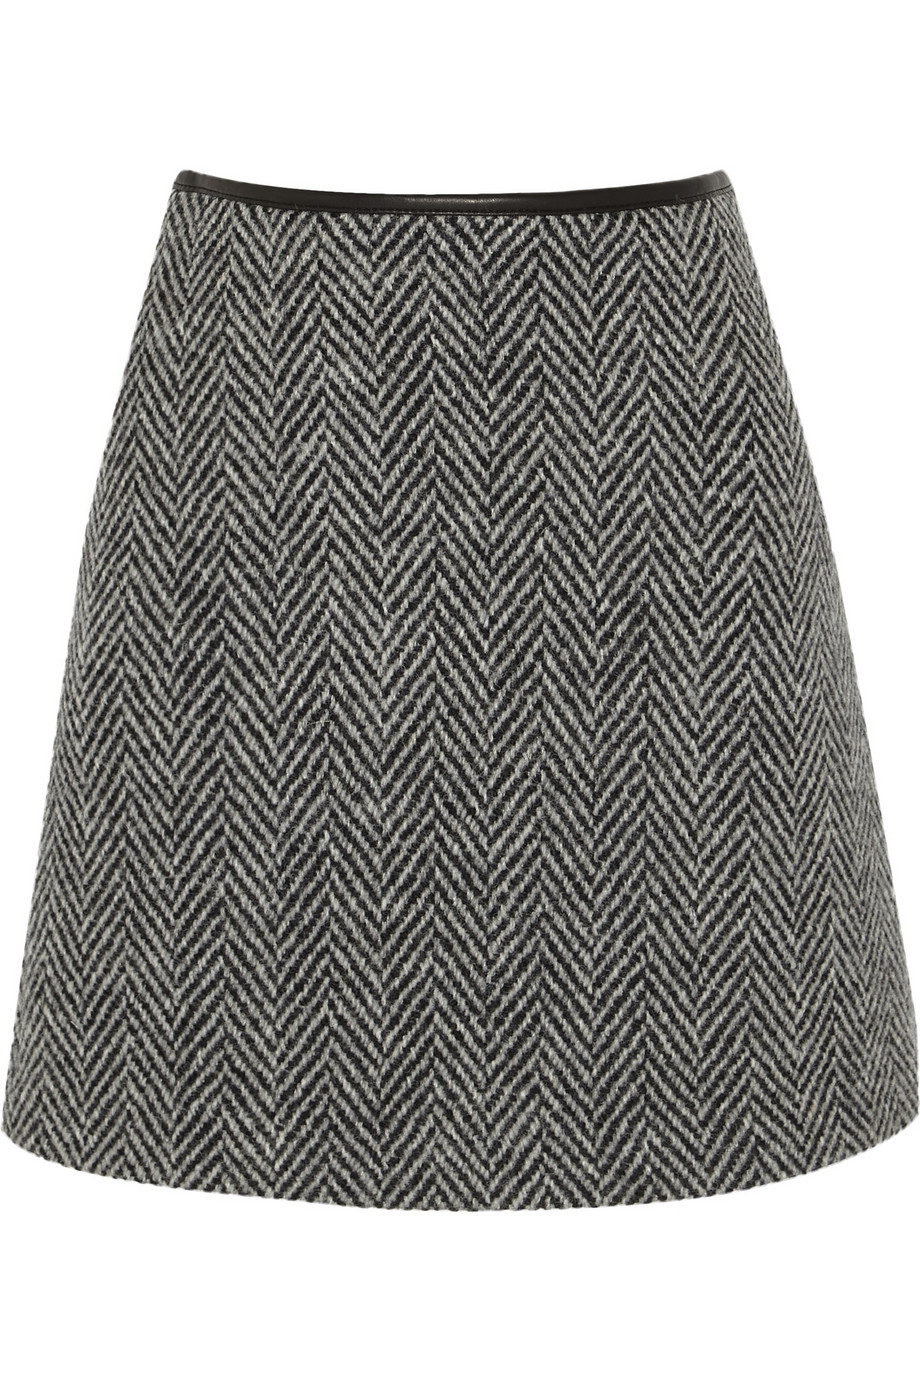 Lyst - Burberry Brit Herringbone Wool-Tweed Mini Skirt in Gray